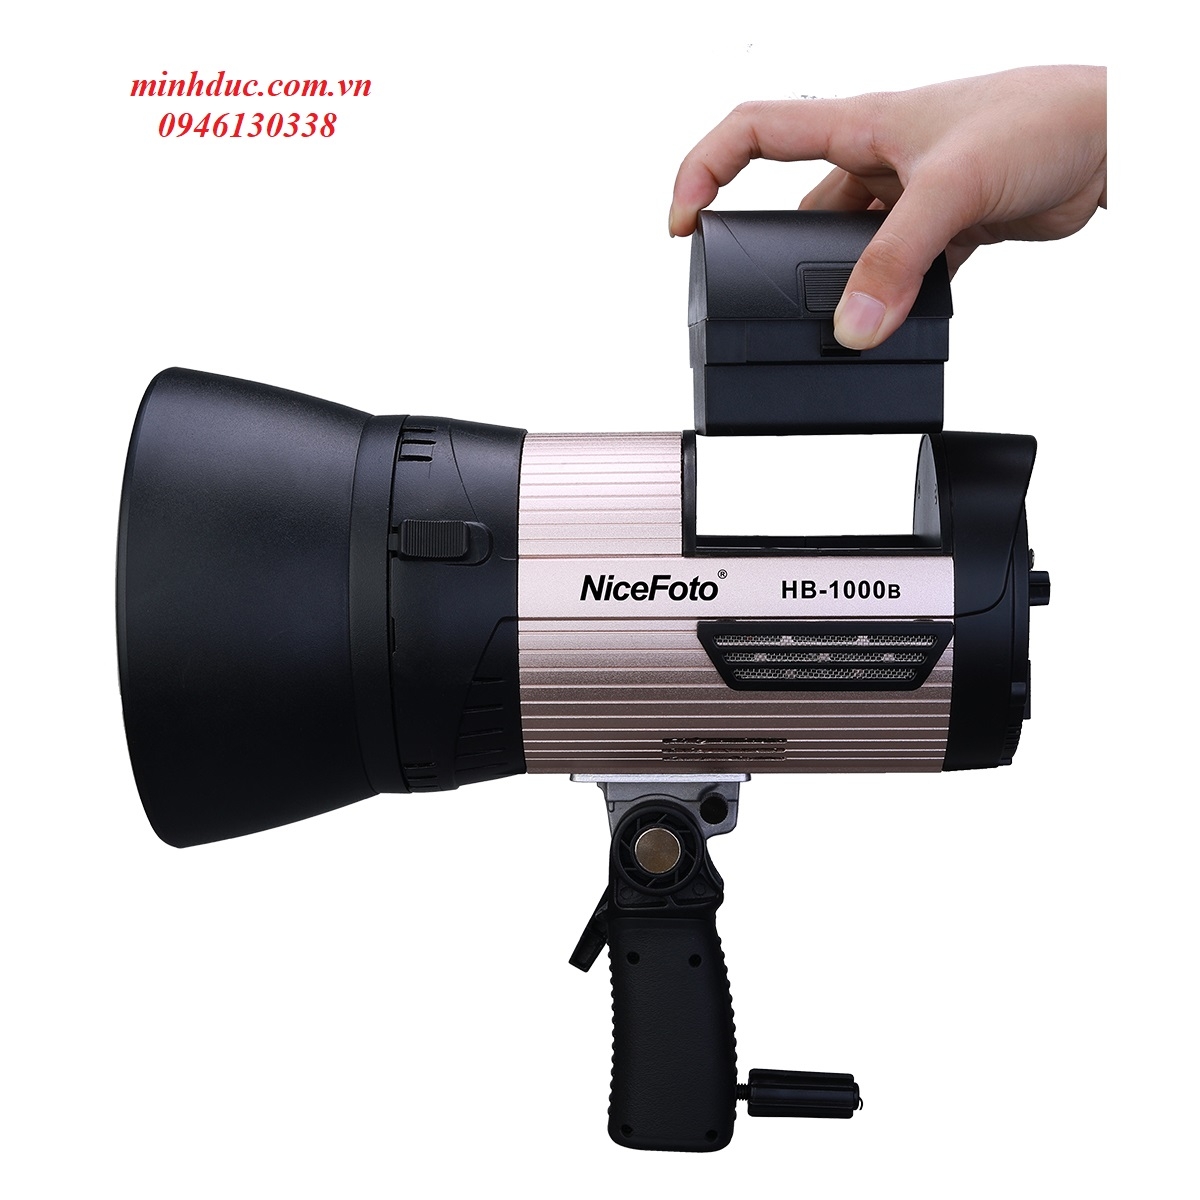 NiceFoto LED video light HB-1000B dùng pin Photoviet